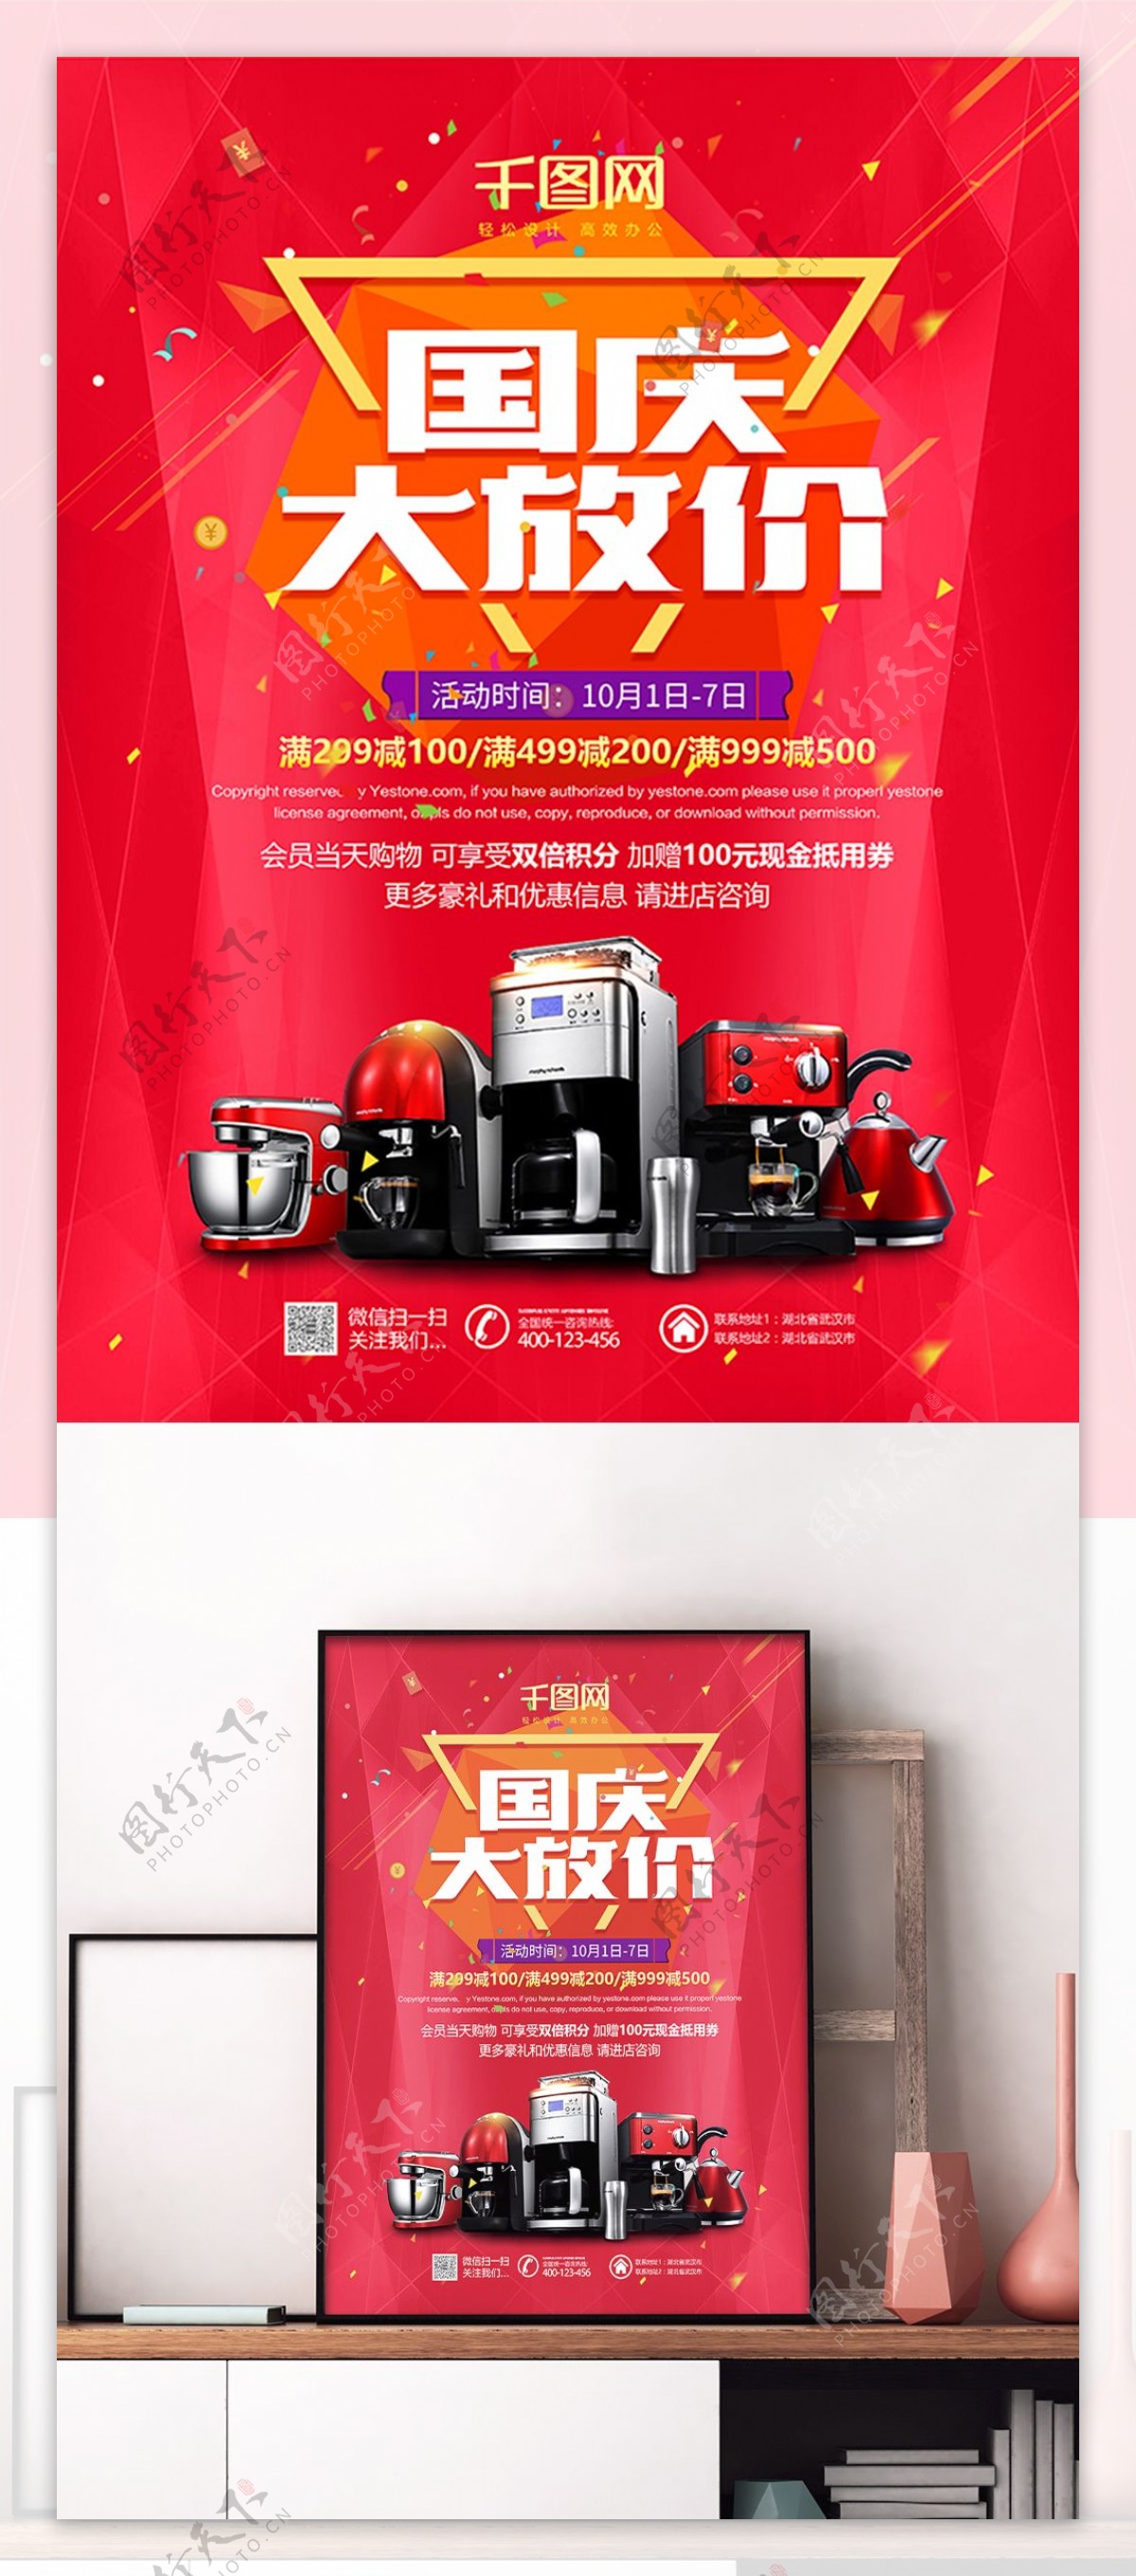 红色国庆大放价电器城活动促销宣传海报